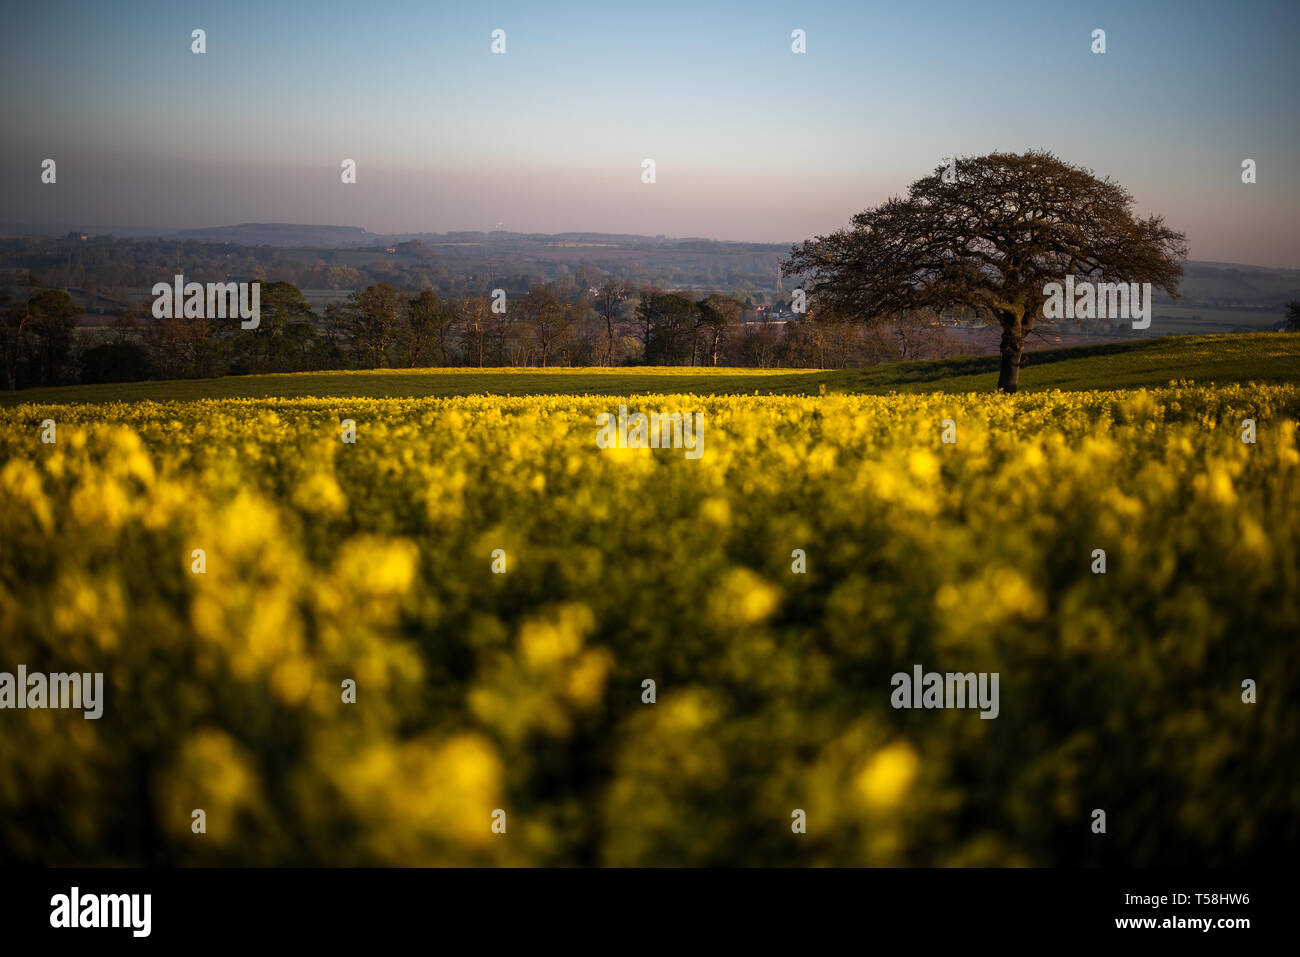 La mattina presto luce solare su campi di colza in Oriente Bridgford, Nottinghamshire, come il Regno Unito continua a godere il caldo clima di Pasqua. Foto Stock